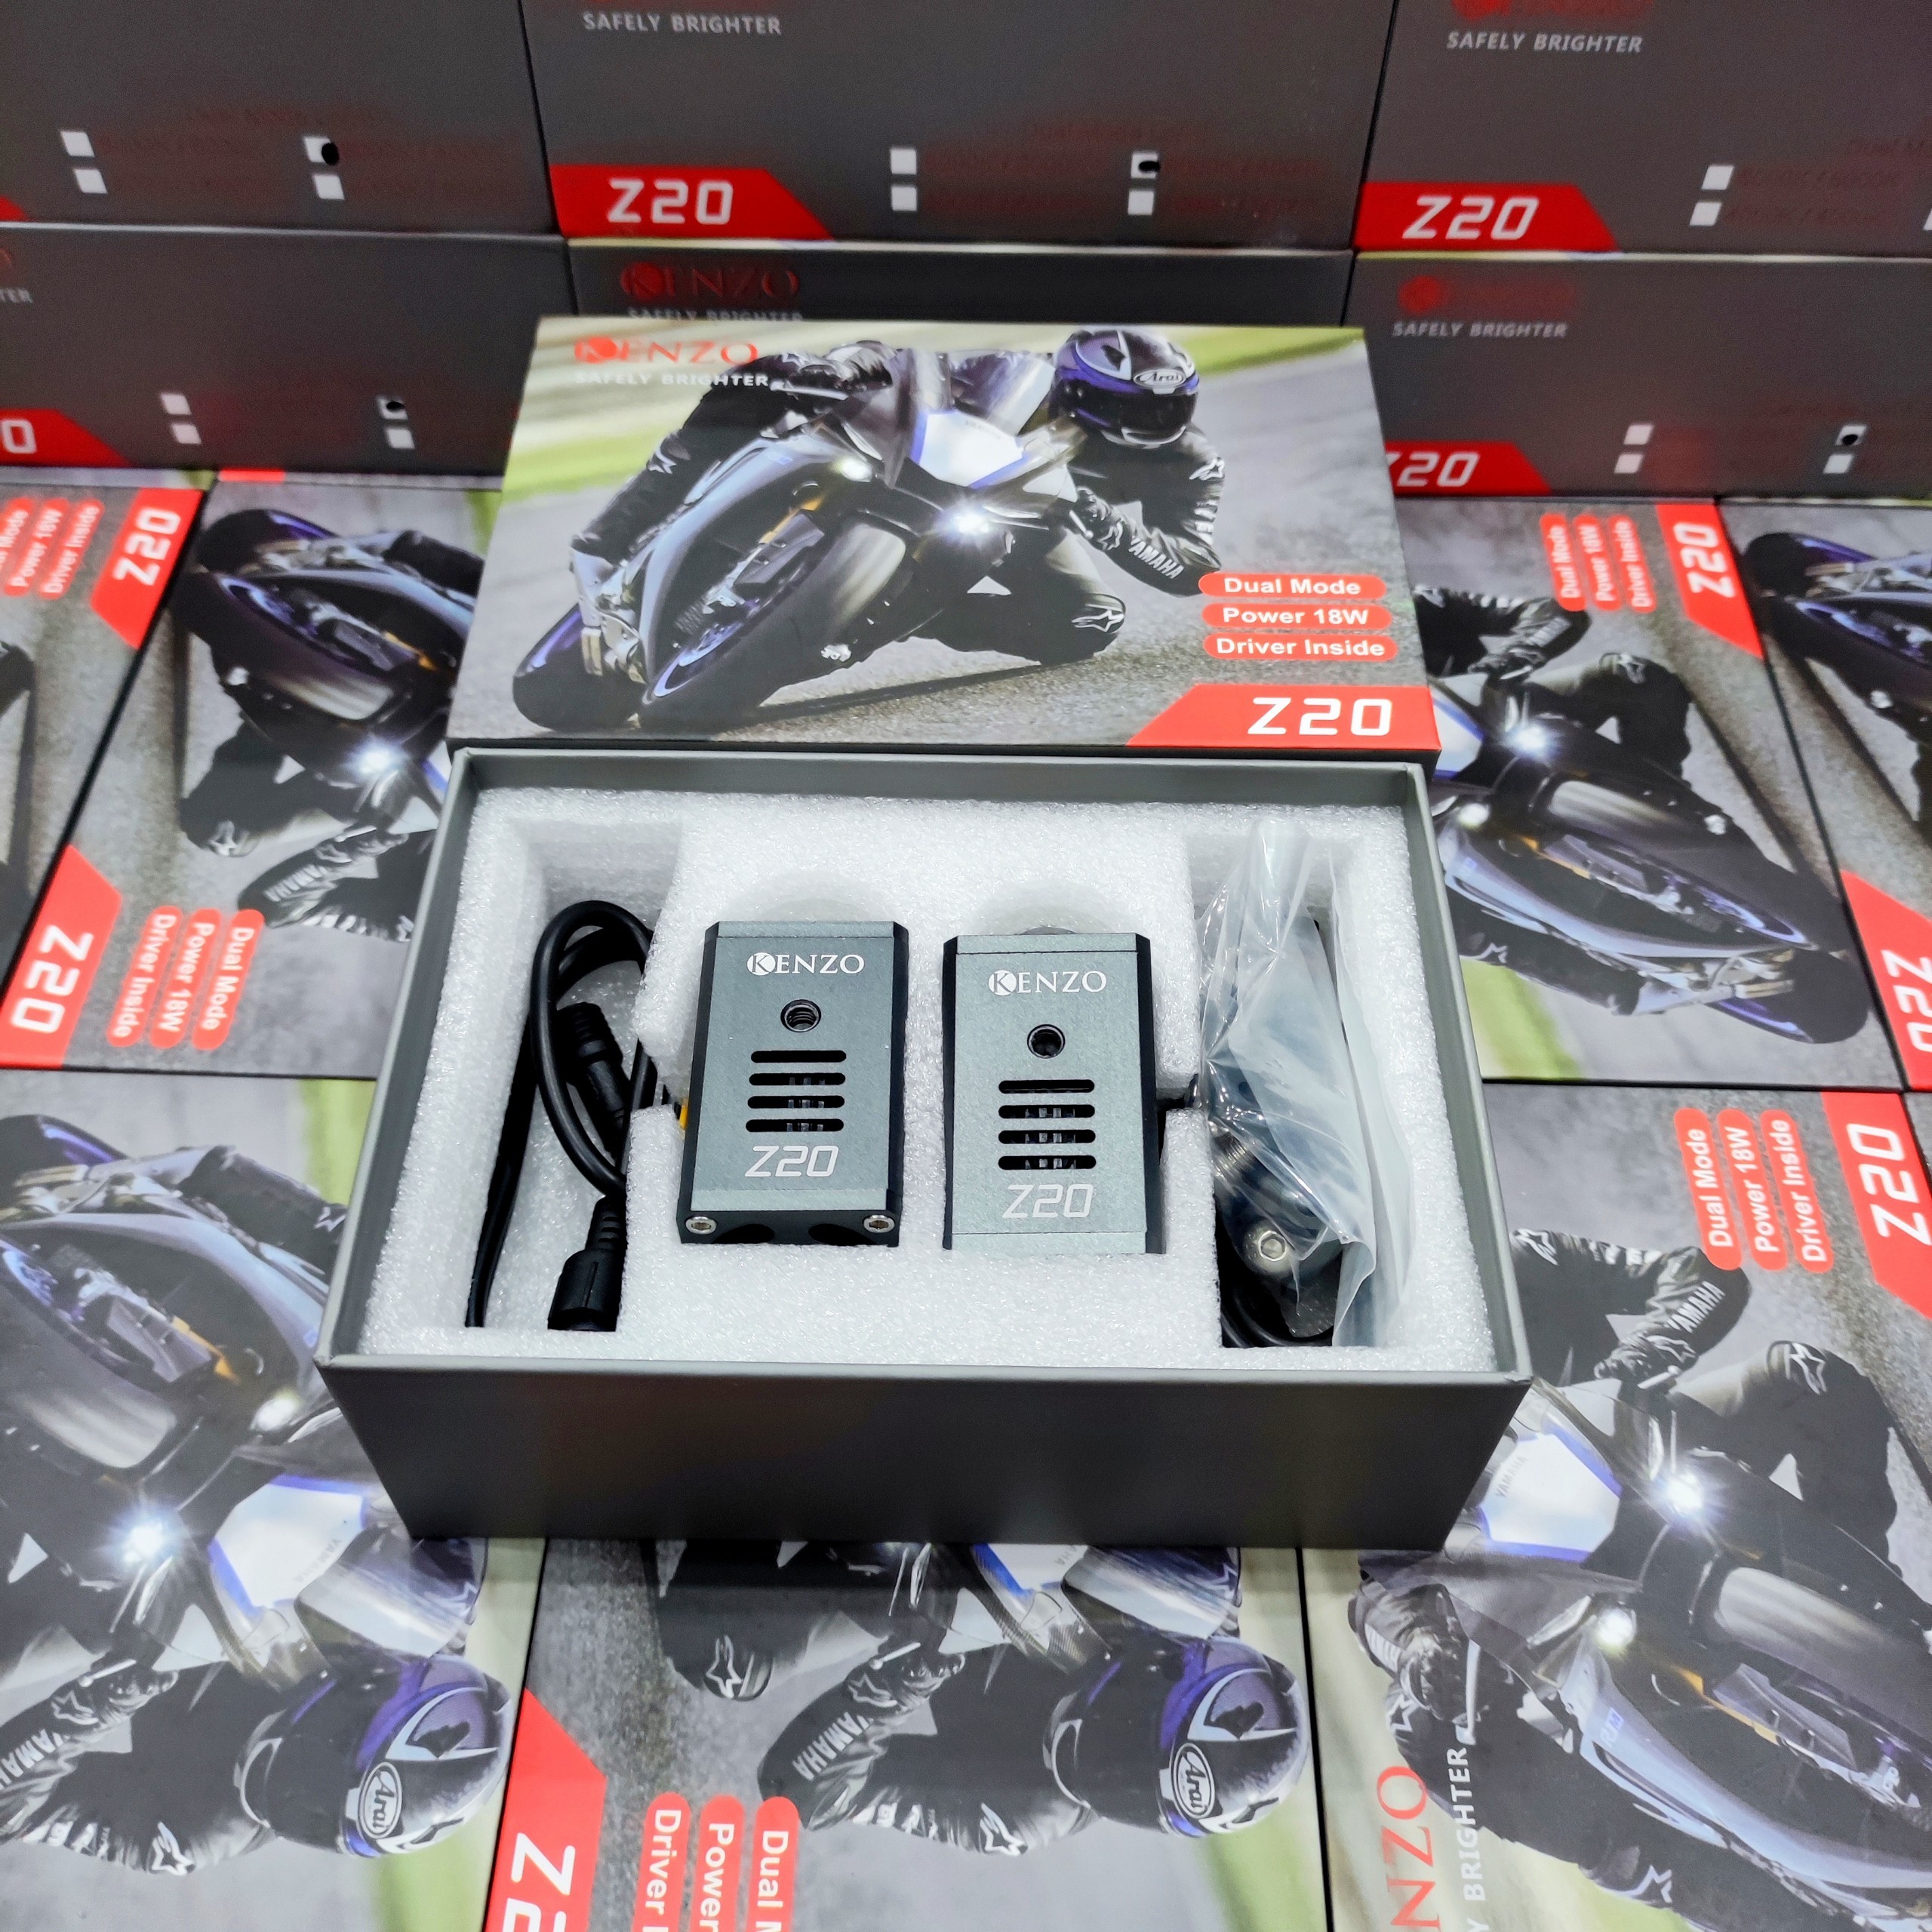 1 ĐôiĐèn trợ sáng mini 2 màu Kenzo Z20 new cho xe máy, oto- Bảo hành 12